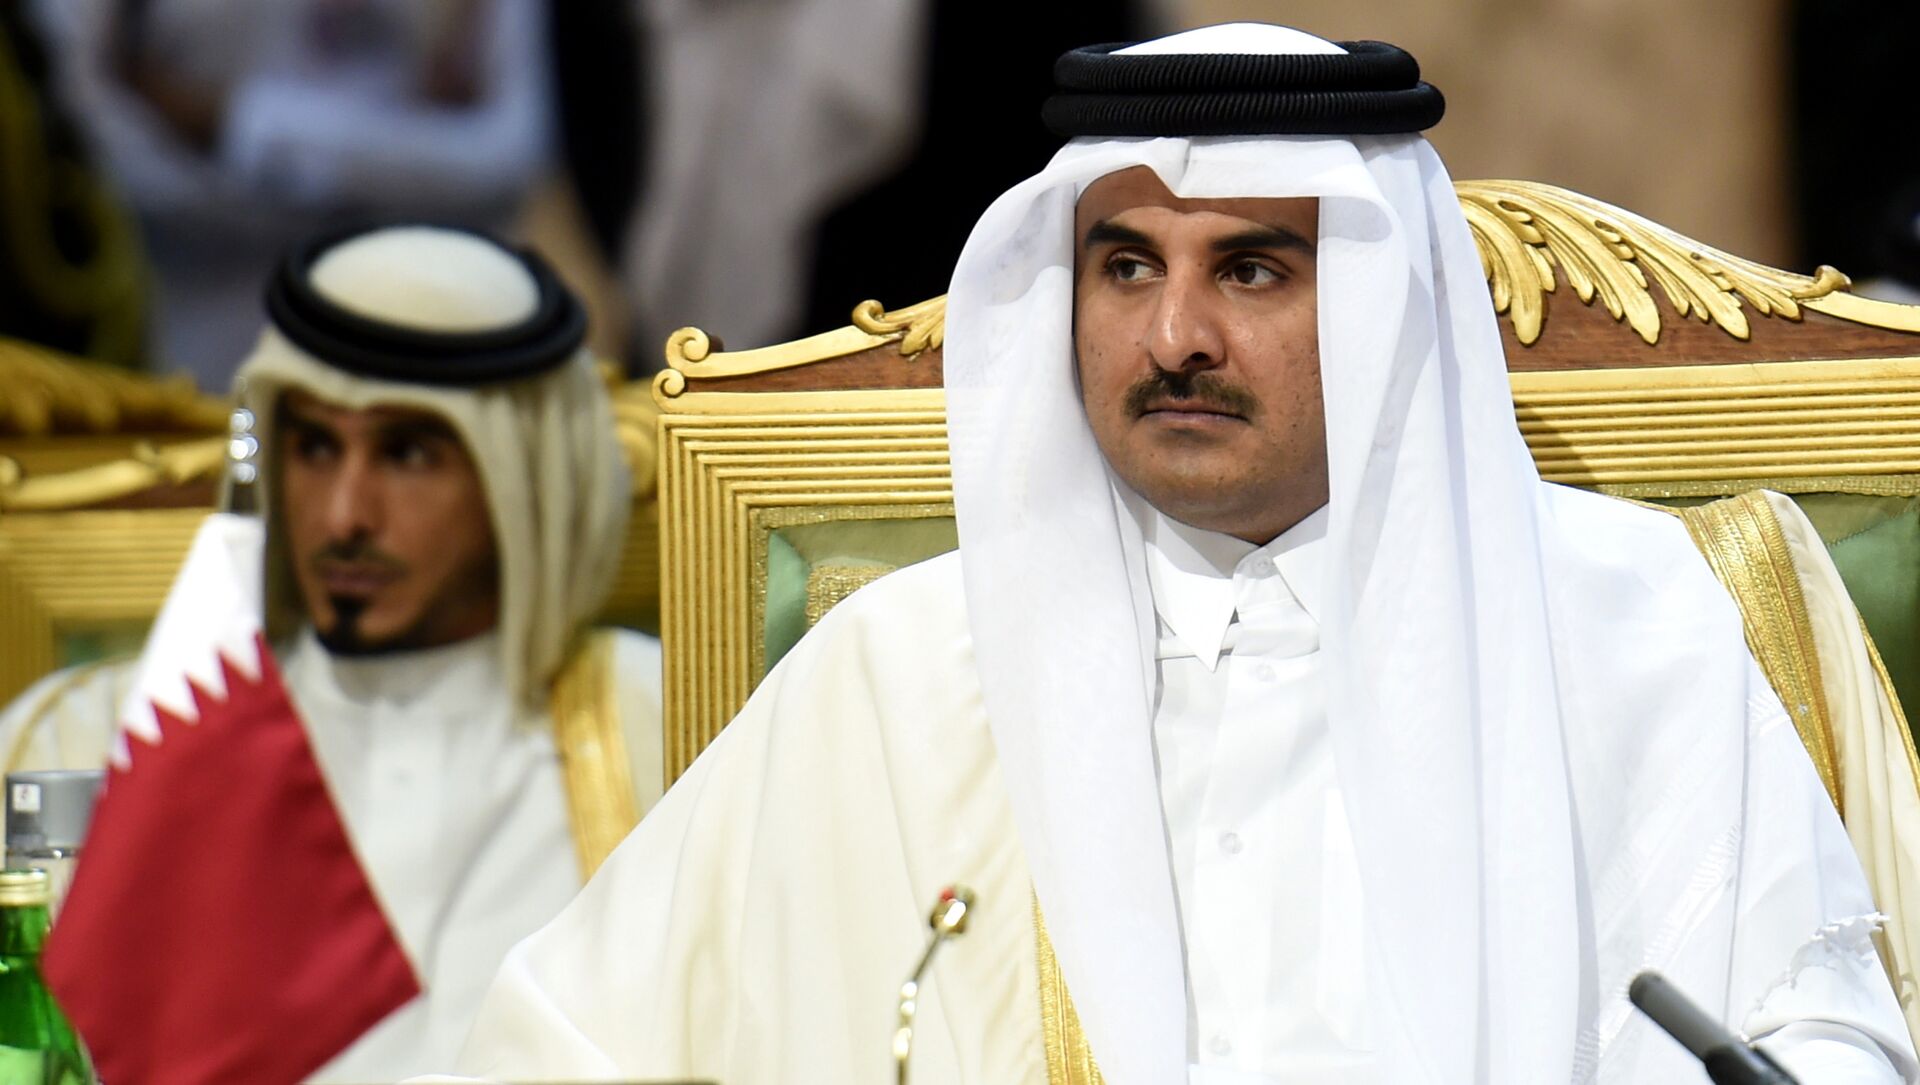 L'émir du Qatar, cheikh Tamim bin Hamad Al-Thani, assiste à la deuxième journée du 136e sommet du Conseil de coopération du Golfe (CCG) qui se tient à Riyad, le 10 décembre 2015, alors que les rois et émirs de six pays du Golfe ont entamé deux jours de discussions, au moment où des discussions sans précédent sont menées par l'opposition syrienne dans un hôtel de luxe dans une autre partie de la ville. Le roi saoudien Salman bin Abdulaziz a appelé à des solutions politiques aux guerres en Syrie et au Yémen, tout en condamnant le terrorisme, à l'ouverture du sommet annuel du Golfe. PHOTO AFP / FAYEZ NURELDINE  - Sputnik Afrique, 1920, 27.05.2021